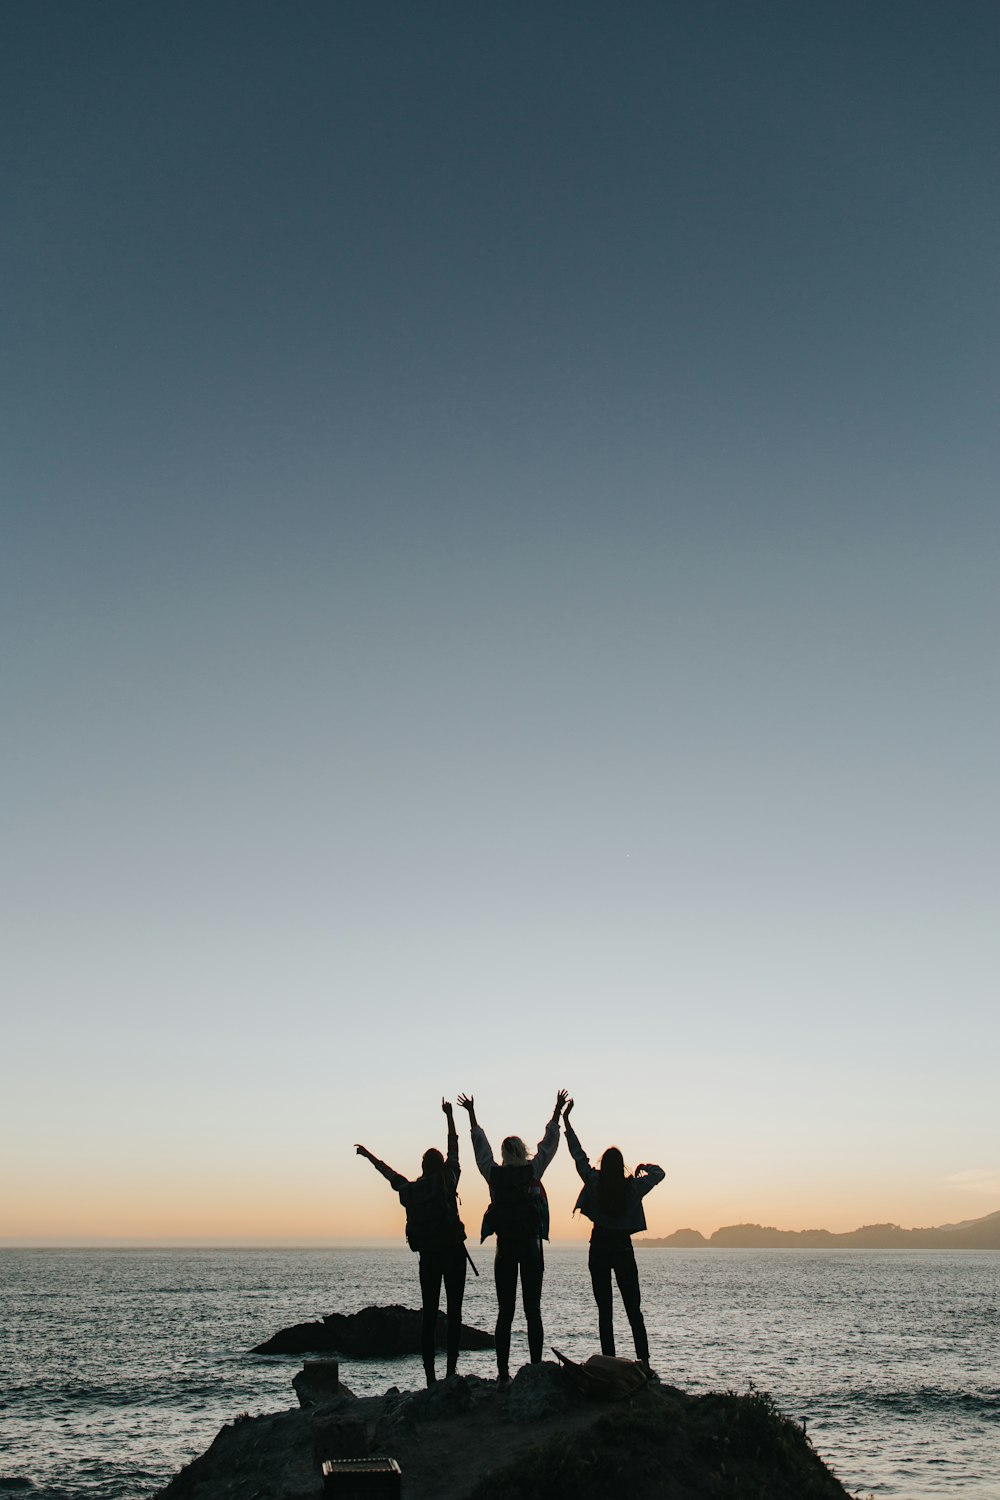 Fotografía de la silueta de las personas que levantan las manos mientras están de pie en la isla